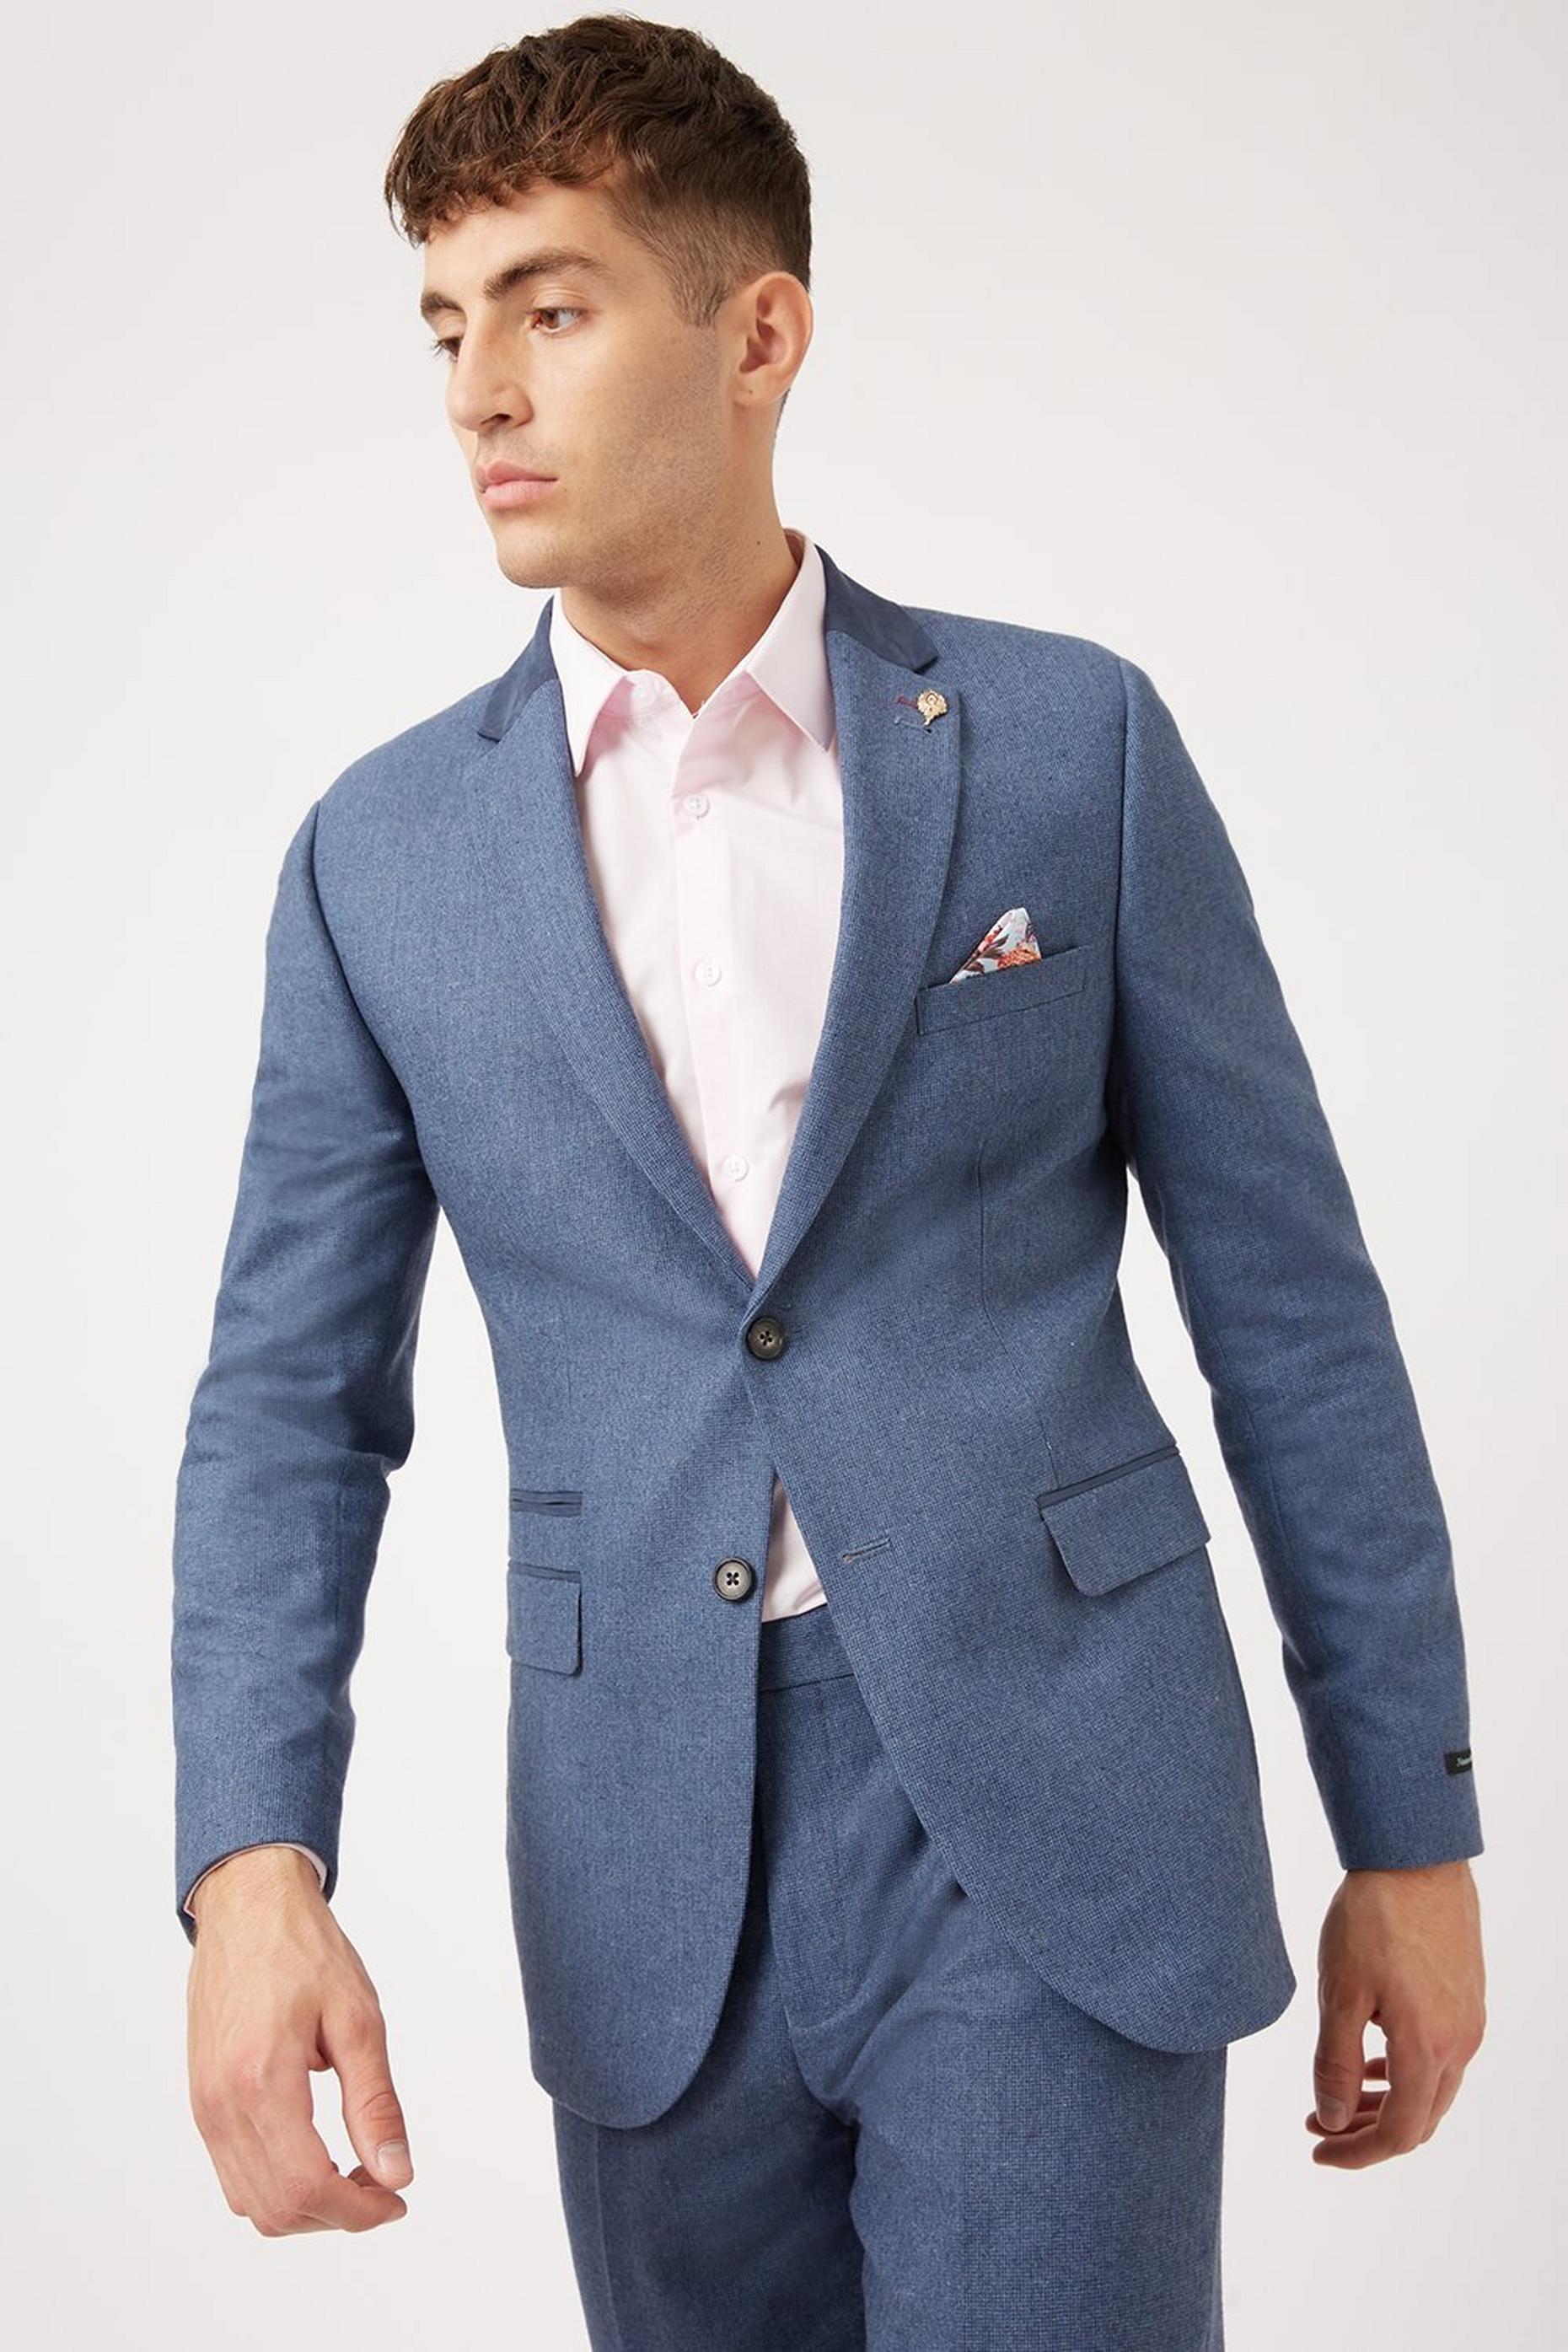 Men's Suit Jackets | Casual & Formal Suit Jackets | Burton